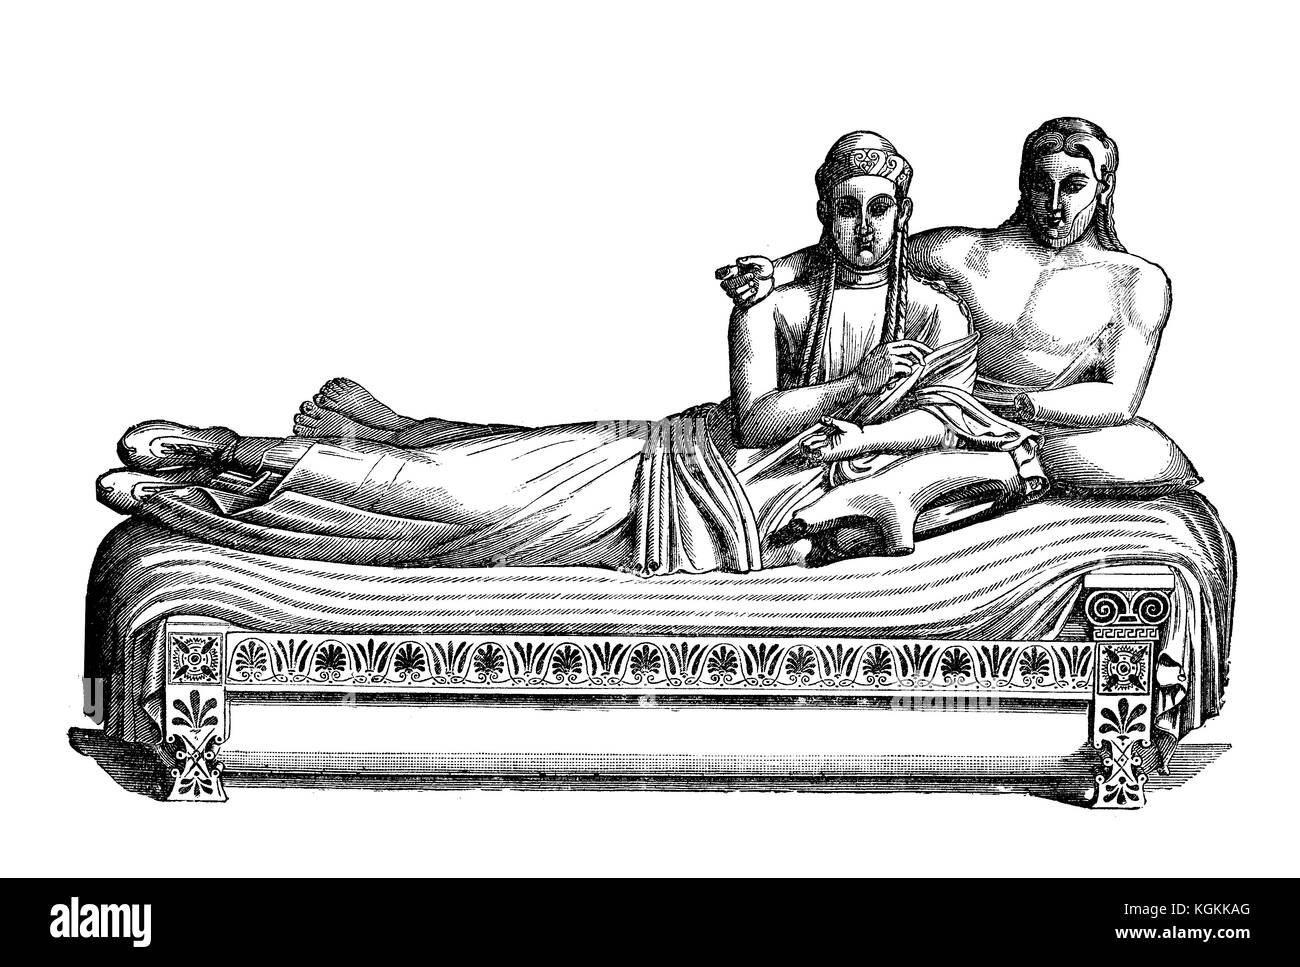 Il sarcofago degli sposi, realizzato in terracotta nel vi secolo a.C., capolavoro dell'arte etrusca di Caere (oggi Cerveteri), rappresenta una coppia sposata che banchina insieme nell'aldilà Foto Stock